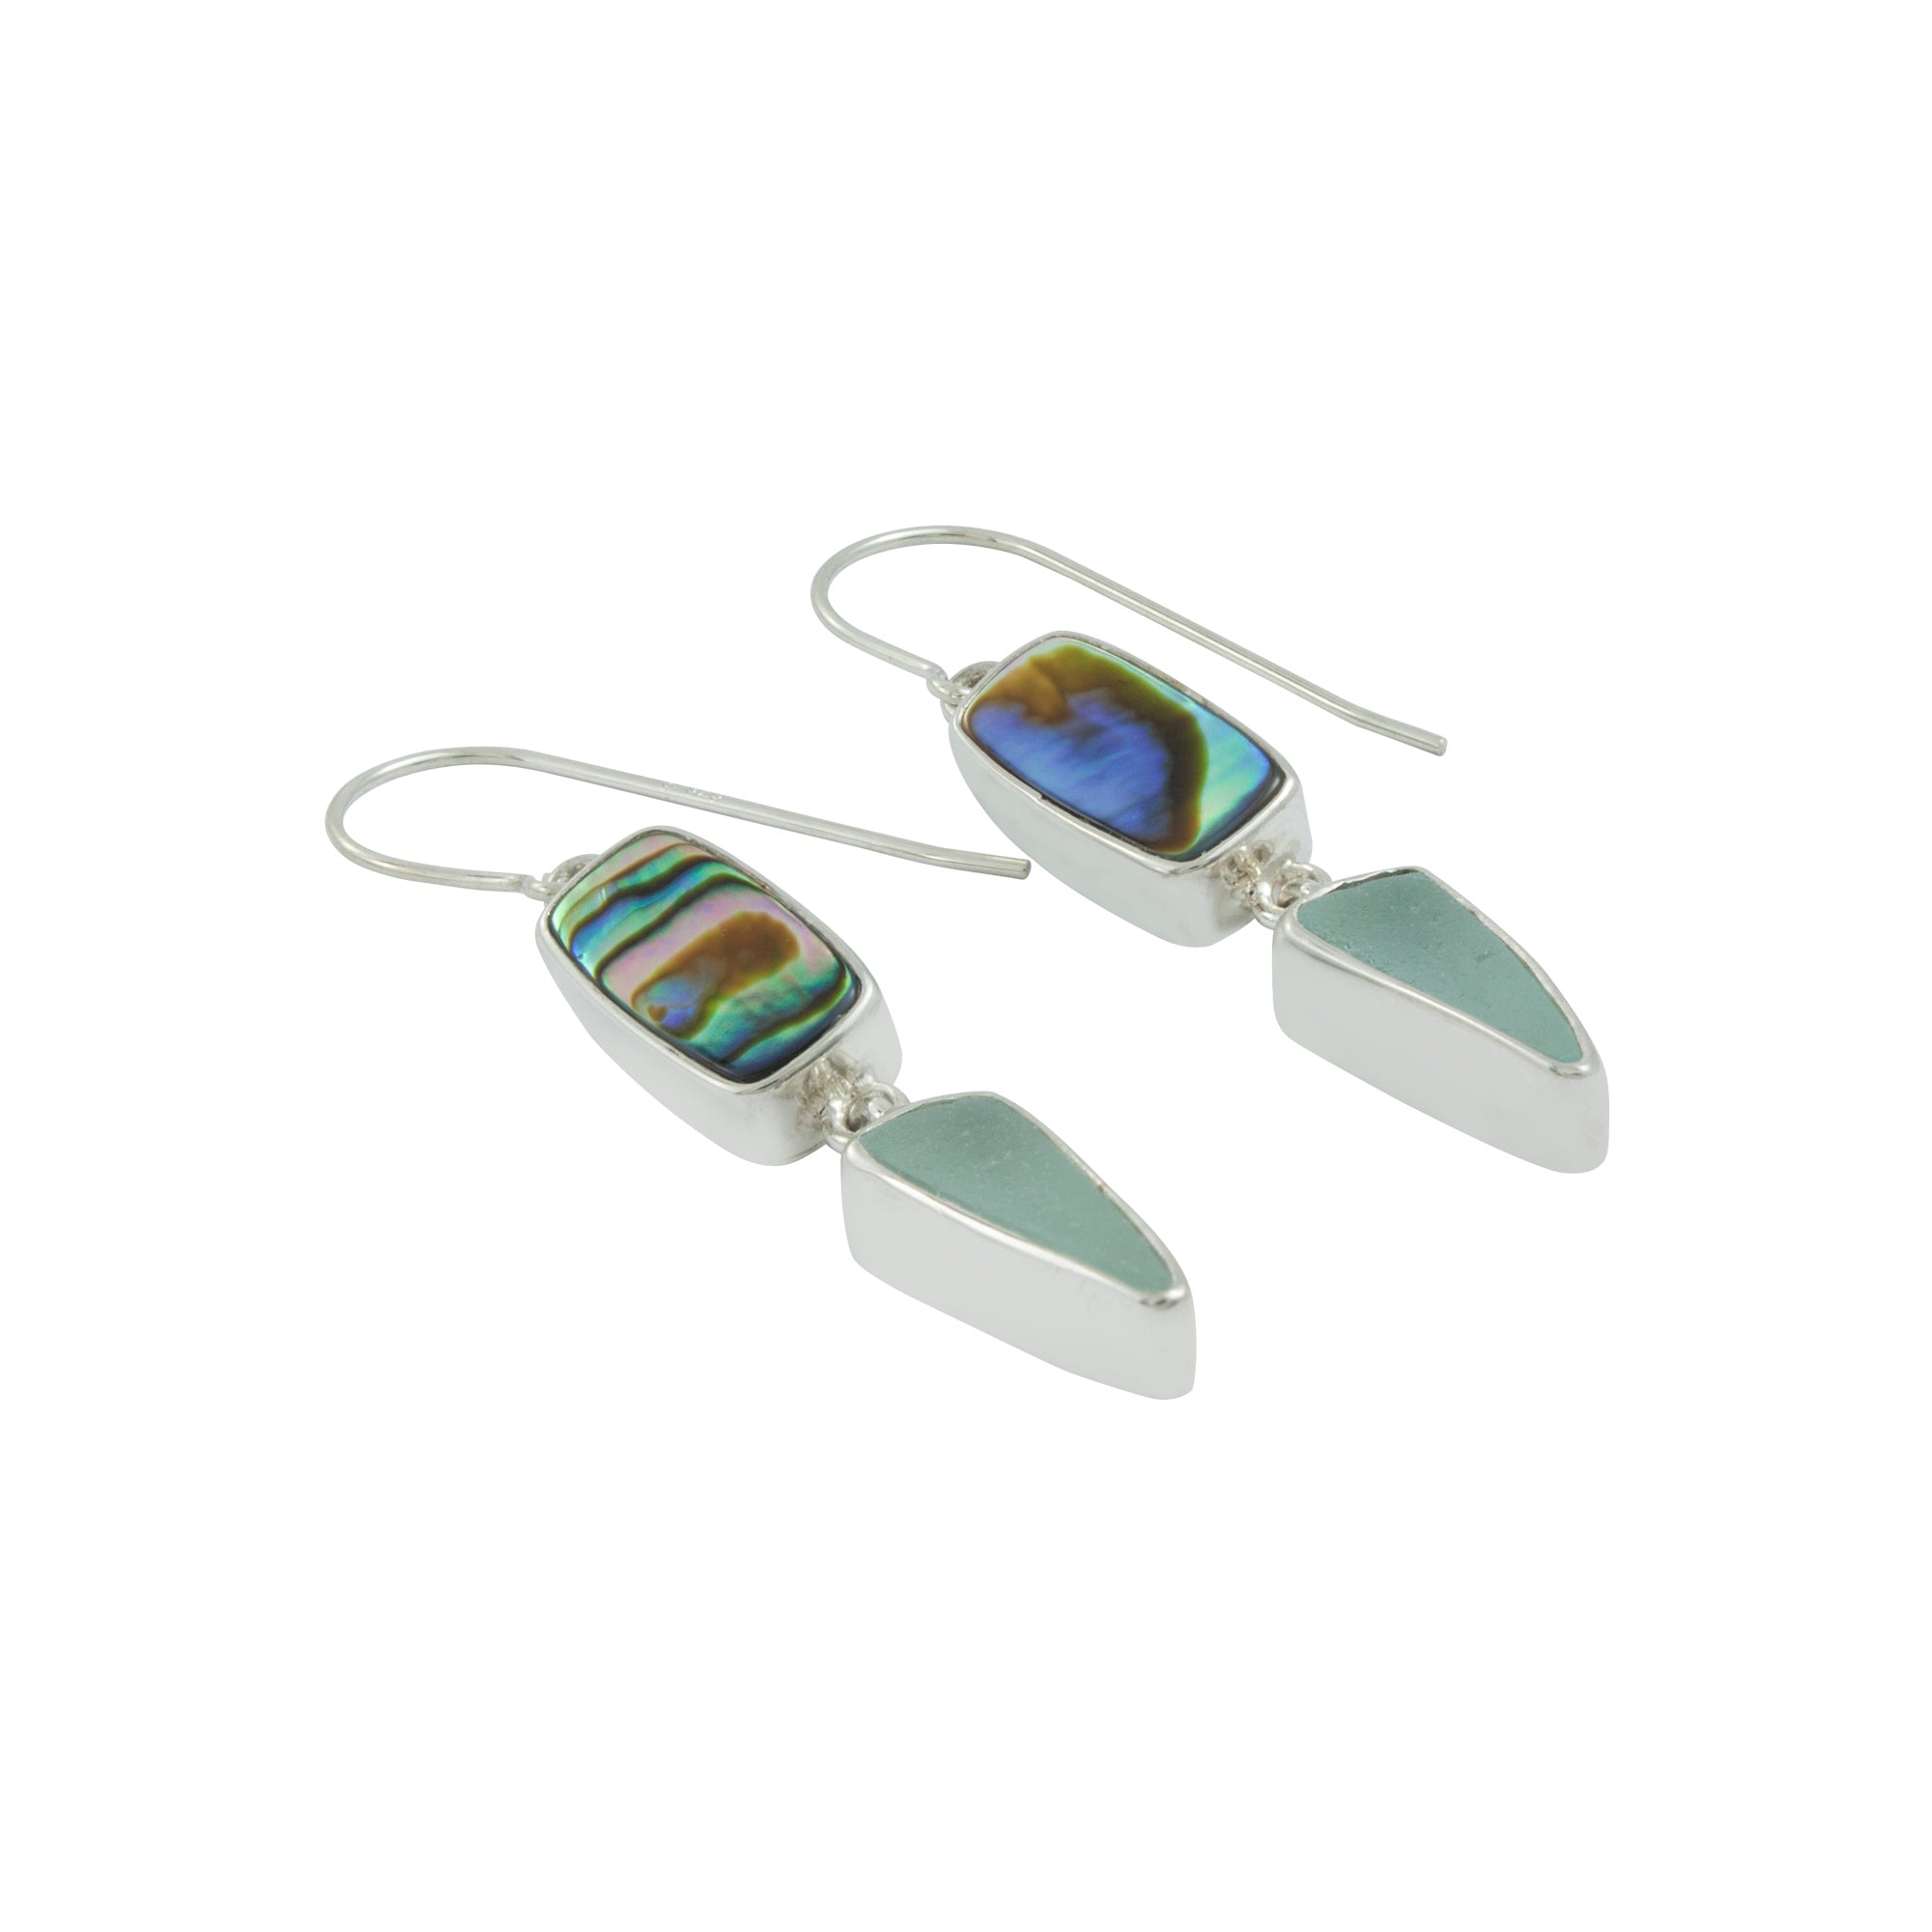 Shimmering Paua Shell & Aqua Seaglass Earrings